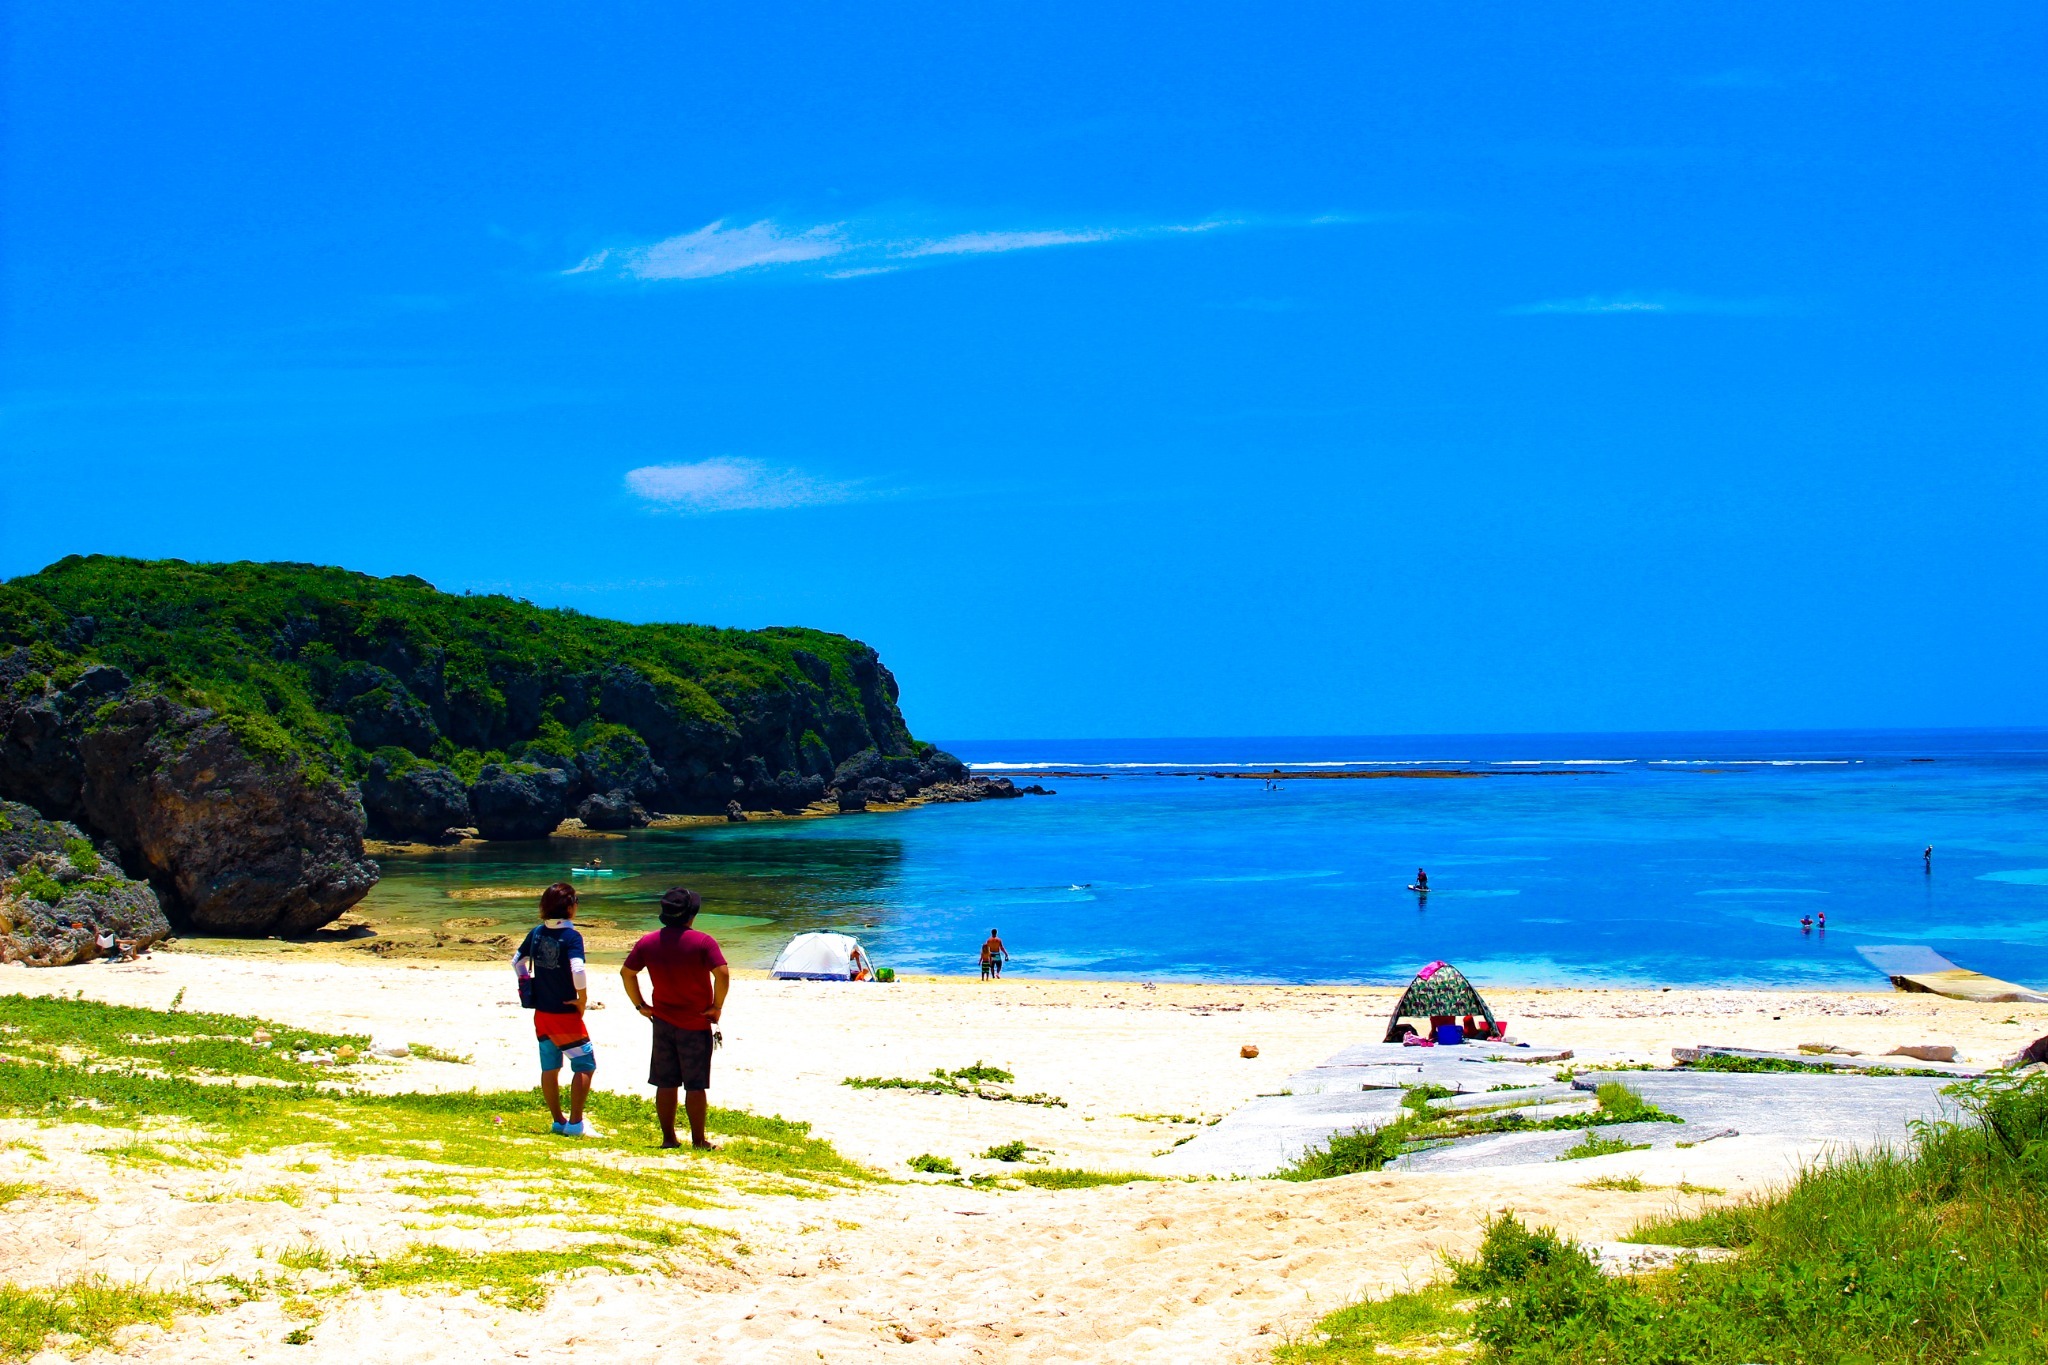 【勝連シートピア】沖縄中部のコスパ最高な人気宿!宿泊者数1000人越。沖縄旅をサポートします